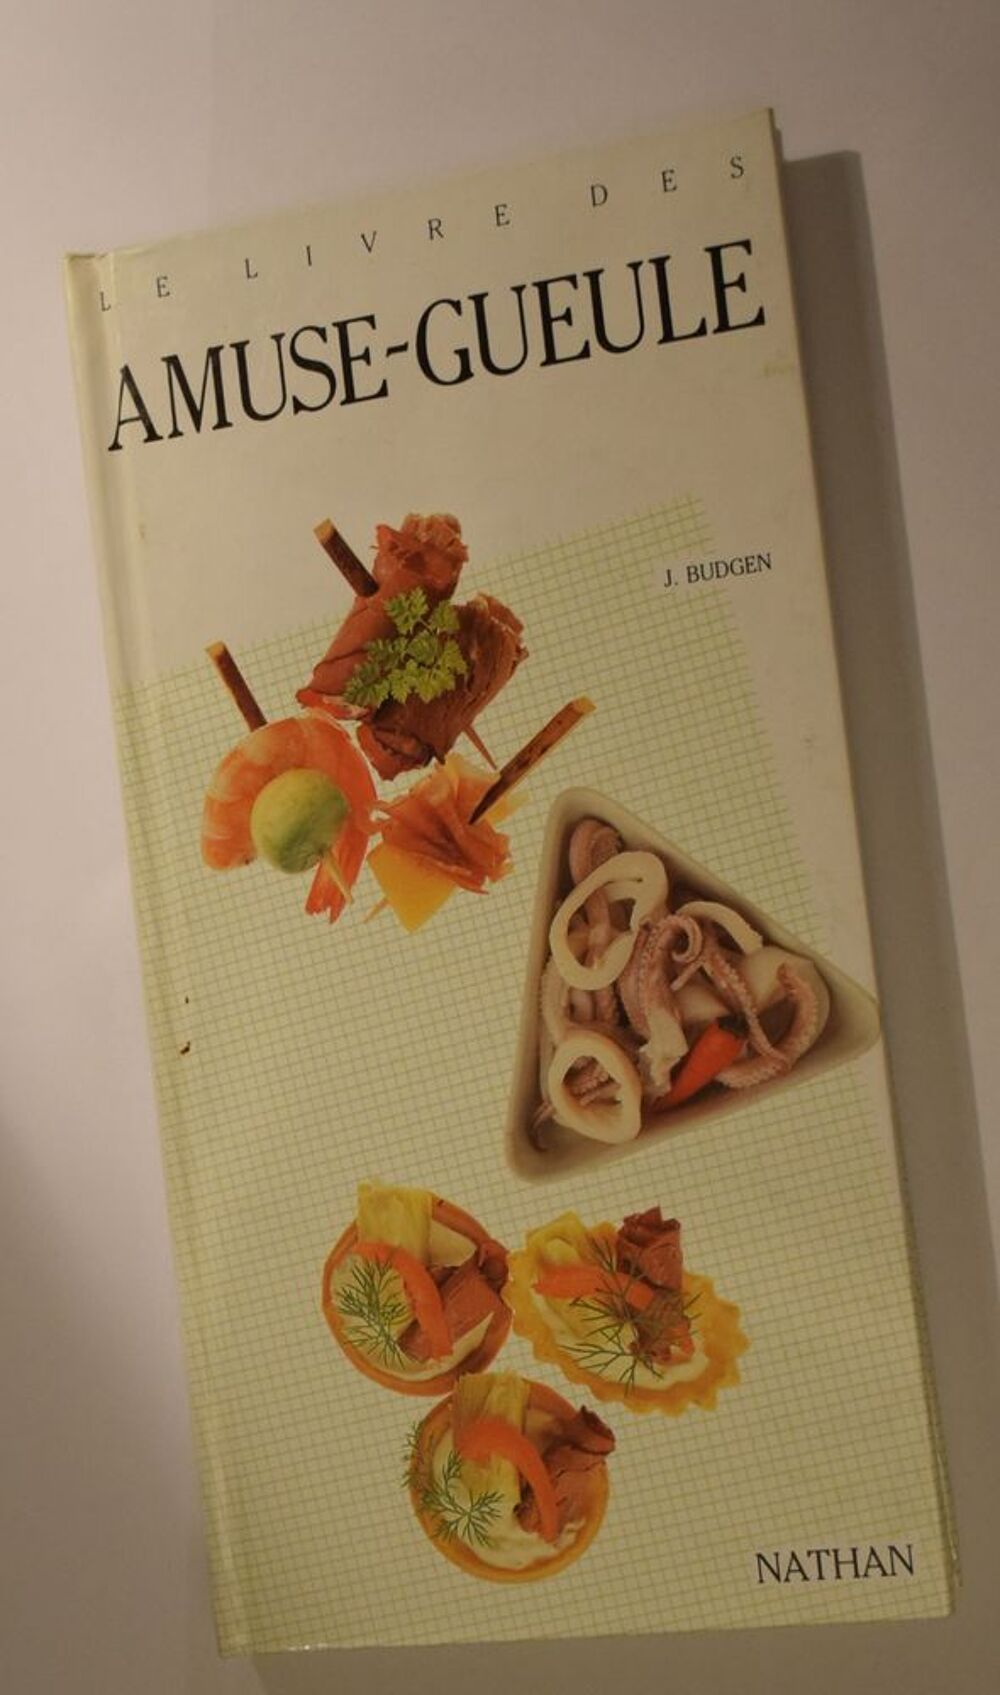 Le Livre des Amuse-Gueule - J. Budgen - 1988 Livres et BD